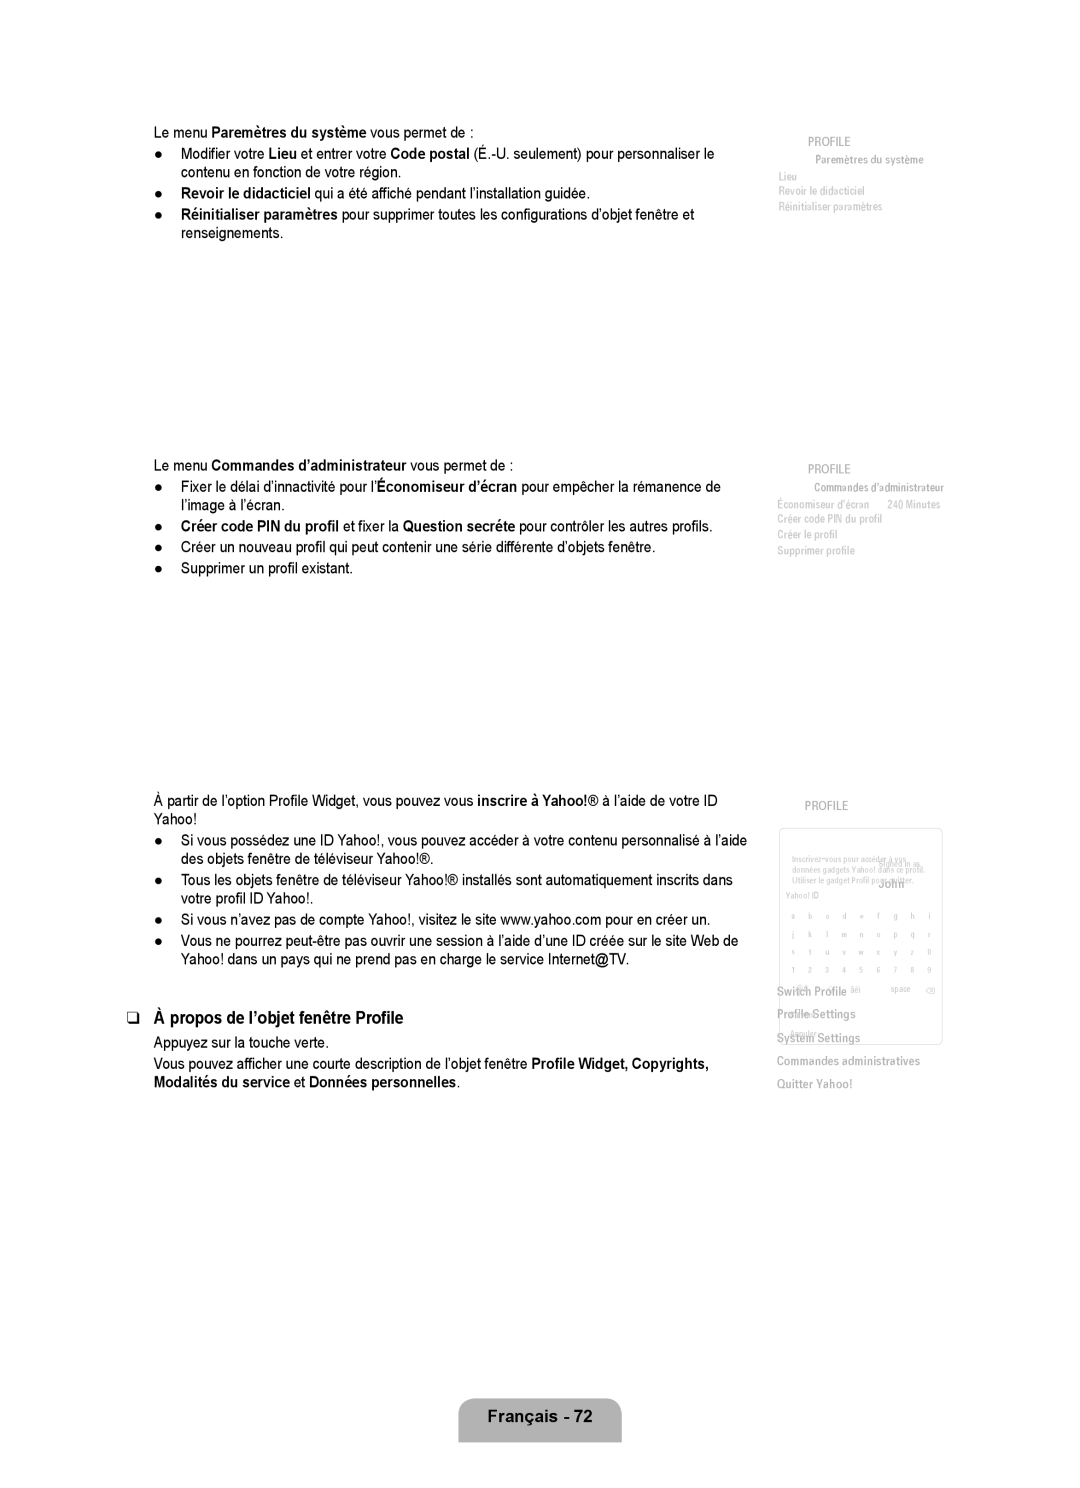 Samsung LN6B60 user manual Propos de l’objet fenêtre Profile, Le menu Commandes d’administrateur vous permet de 